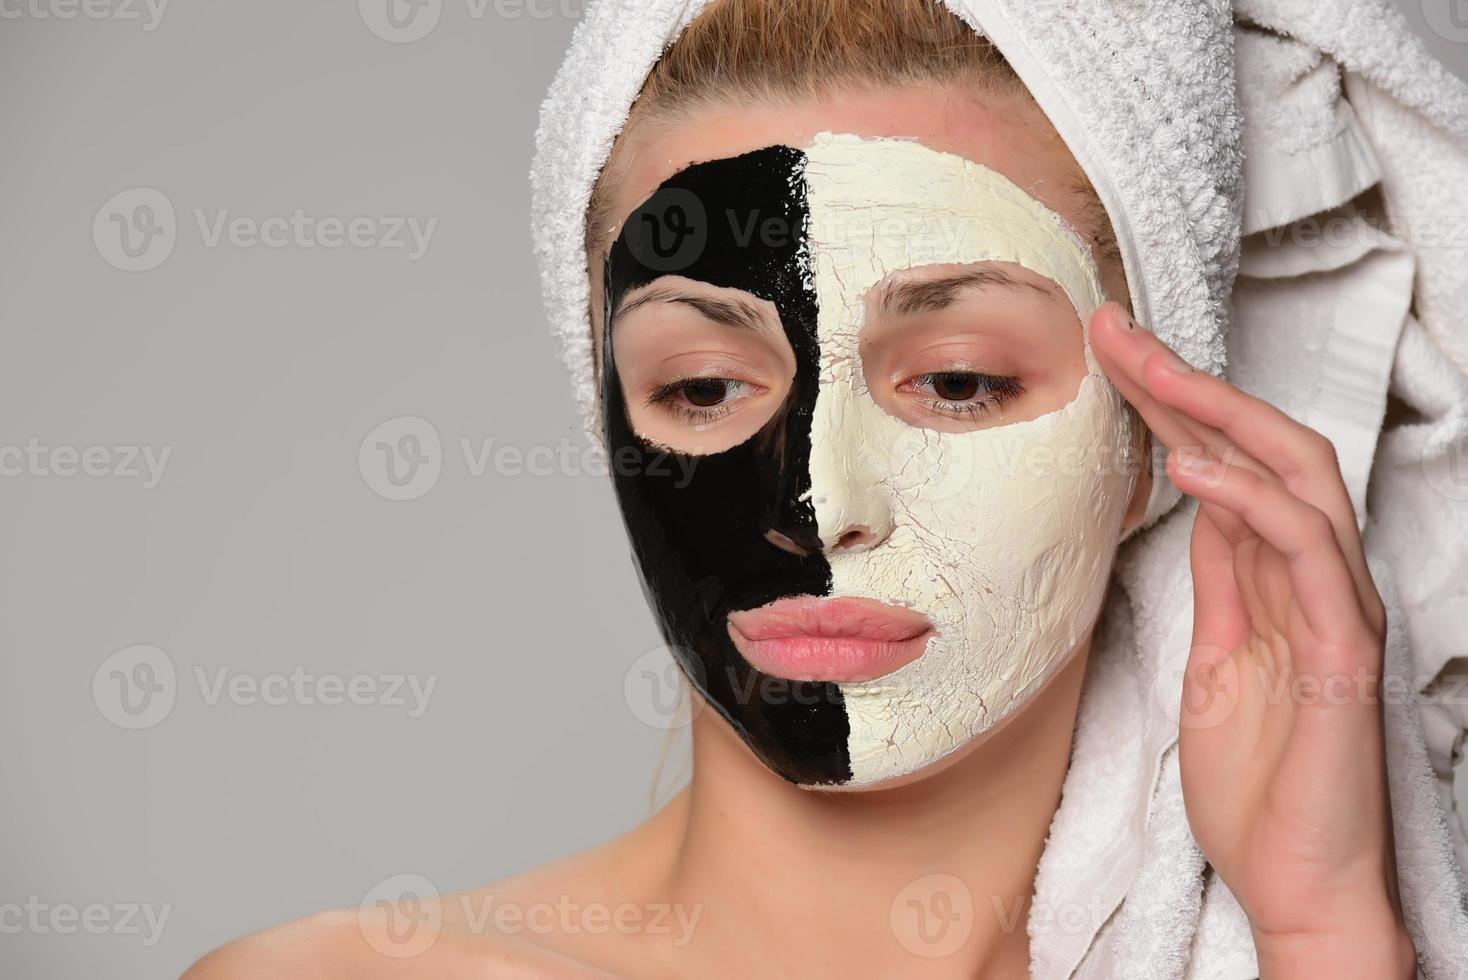 skön kvinna modell med svart och vit ansiktsbehandling kosmetisk mask foto